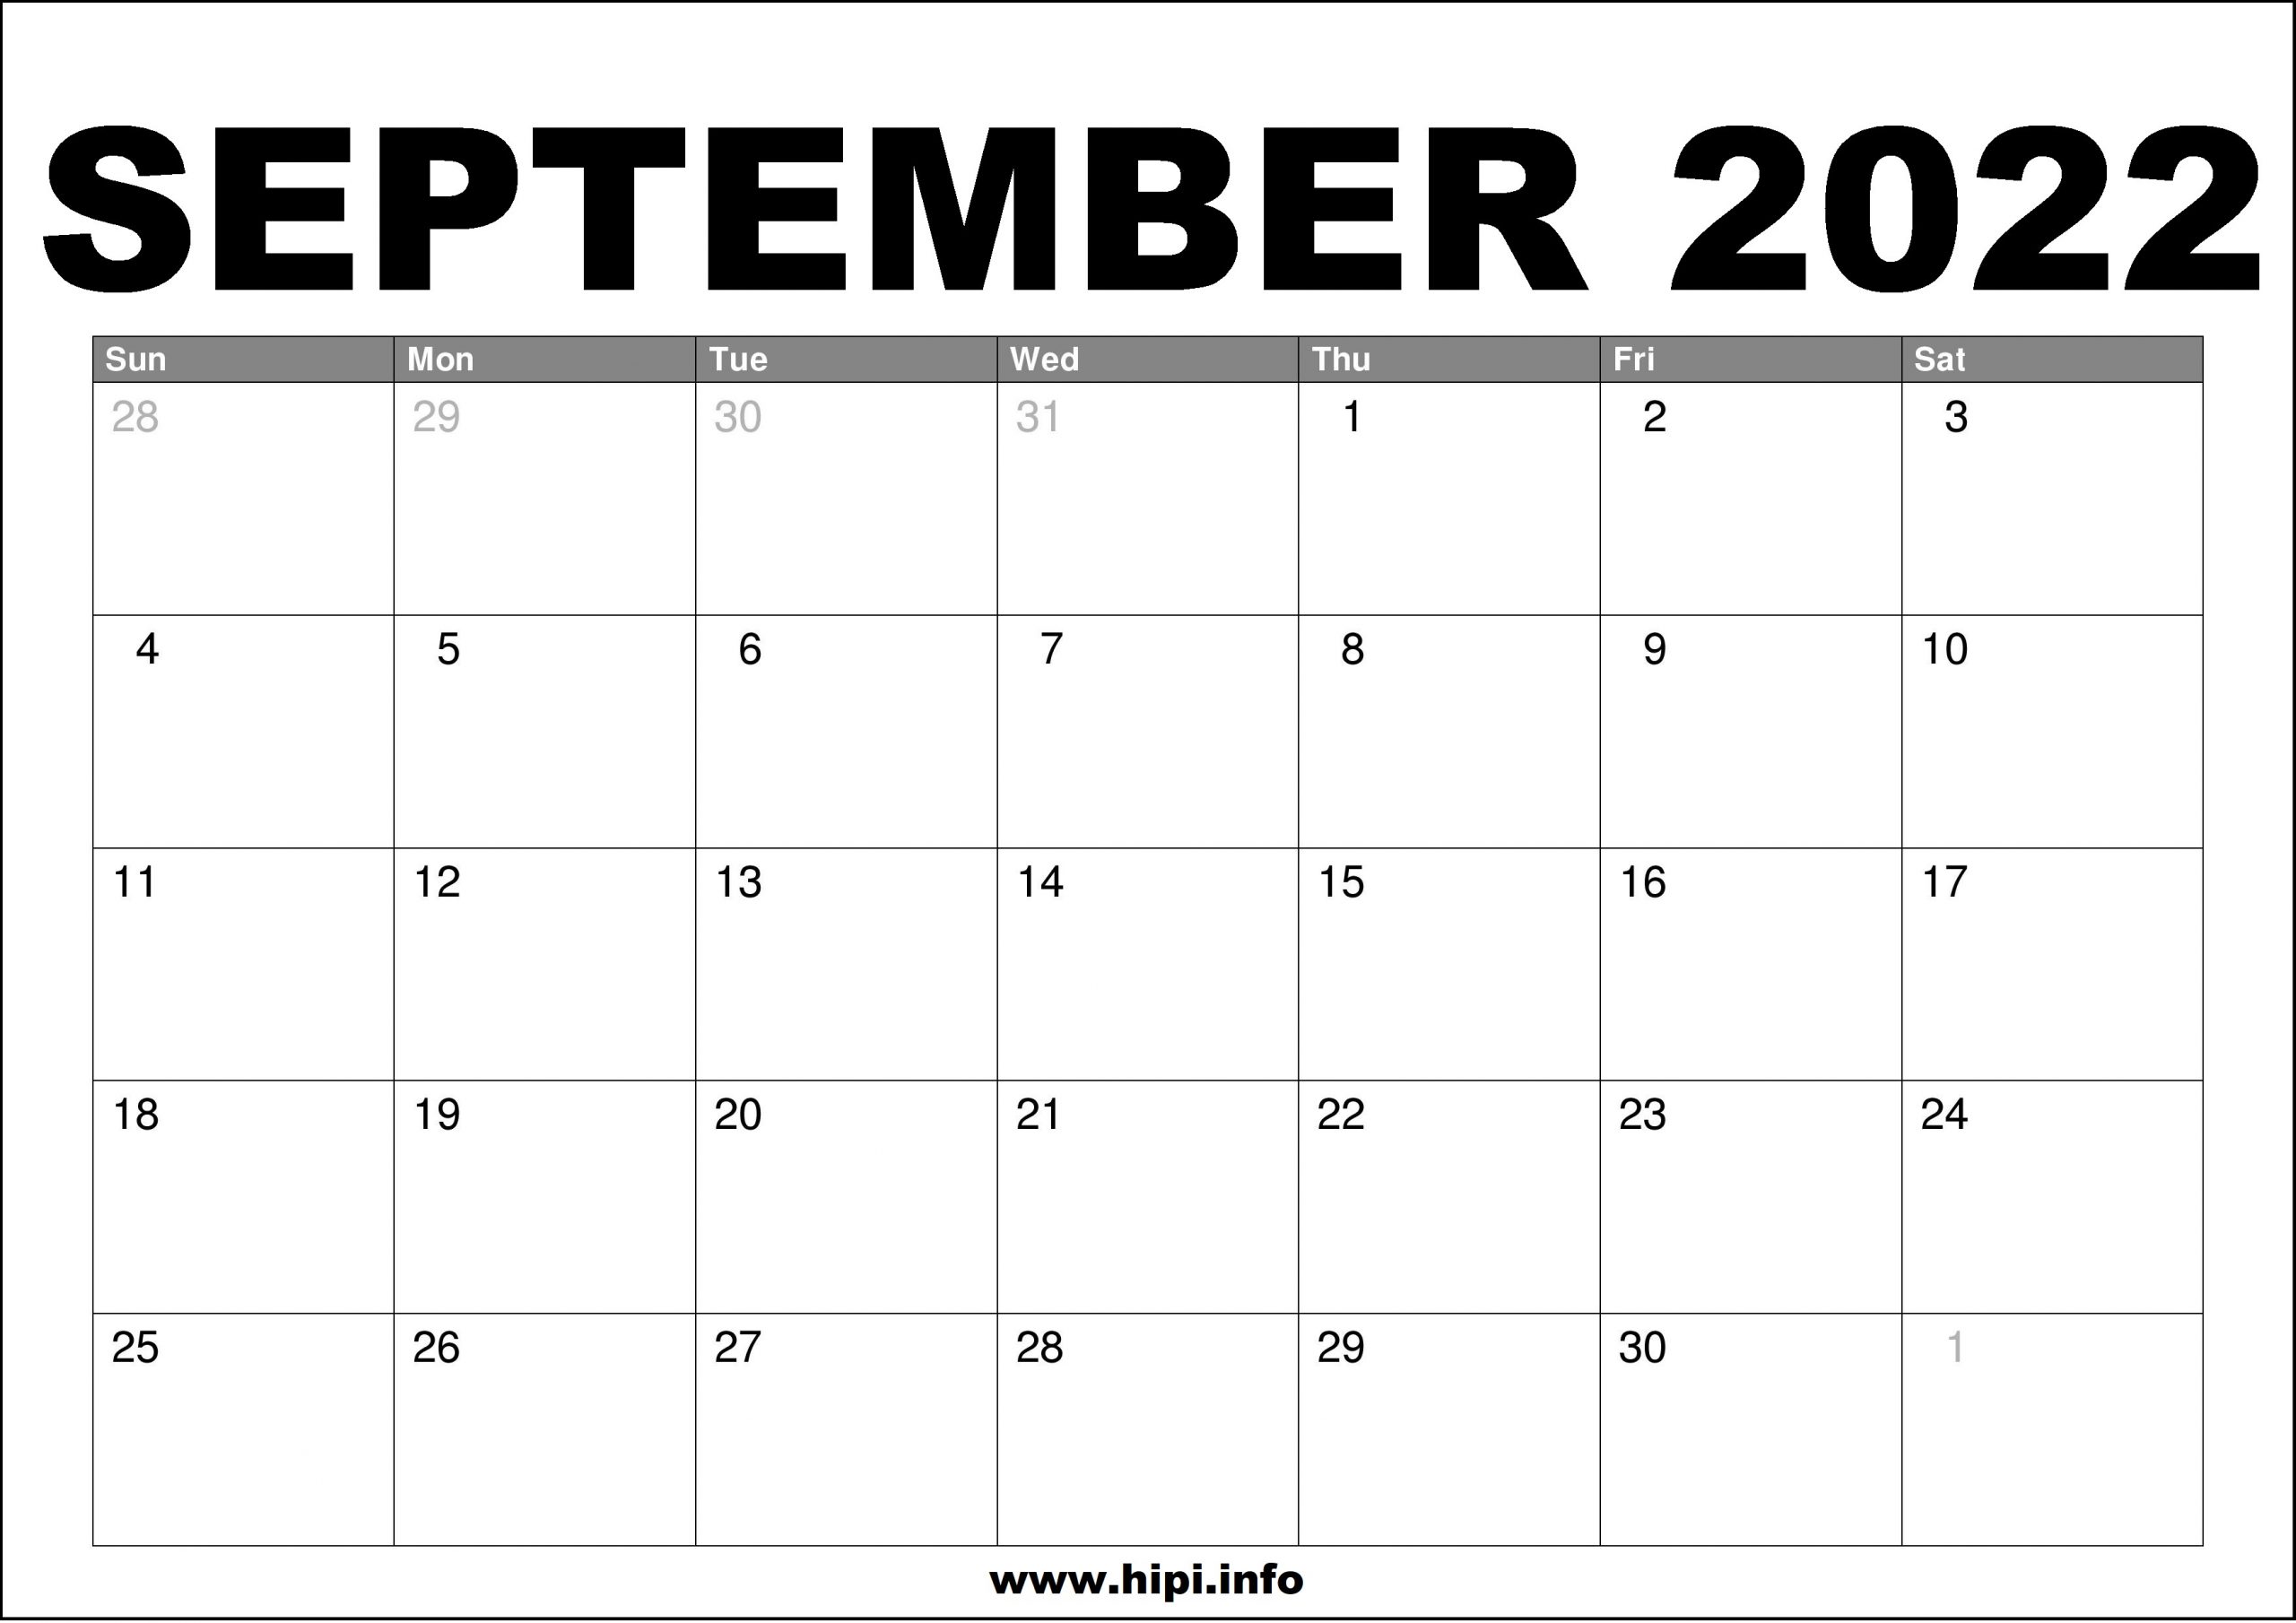 Printable Calendar 2022 September September 2022 Calendar Printable Free - Hipi.info | Calendars Printable  Free